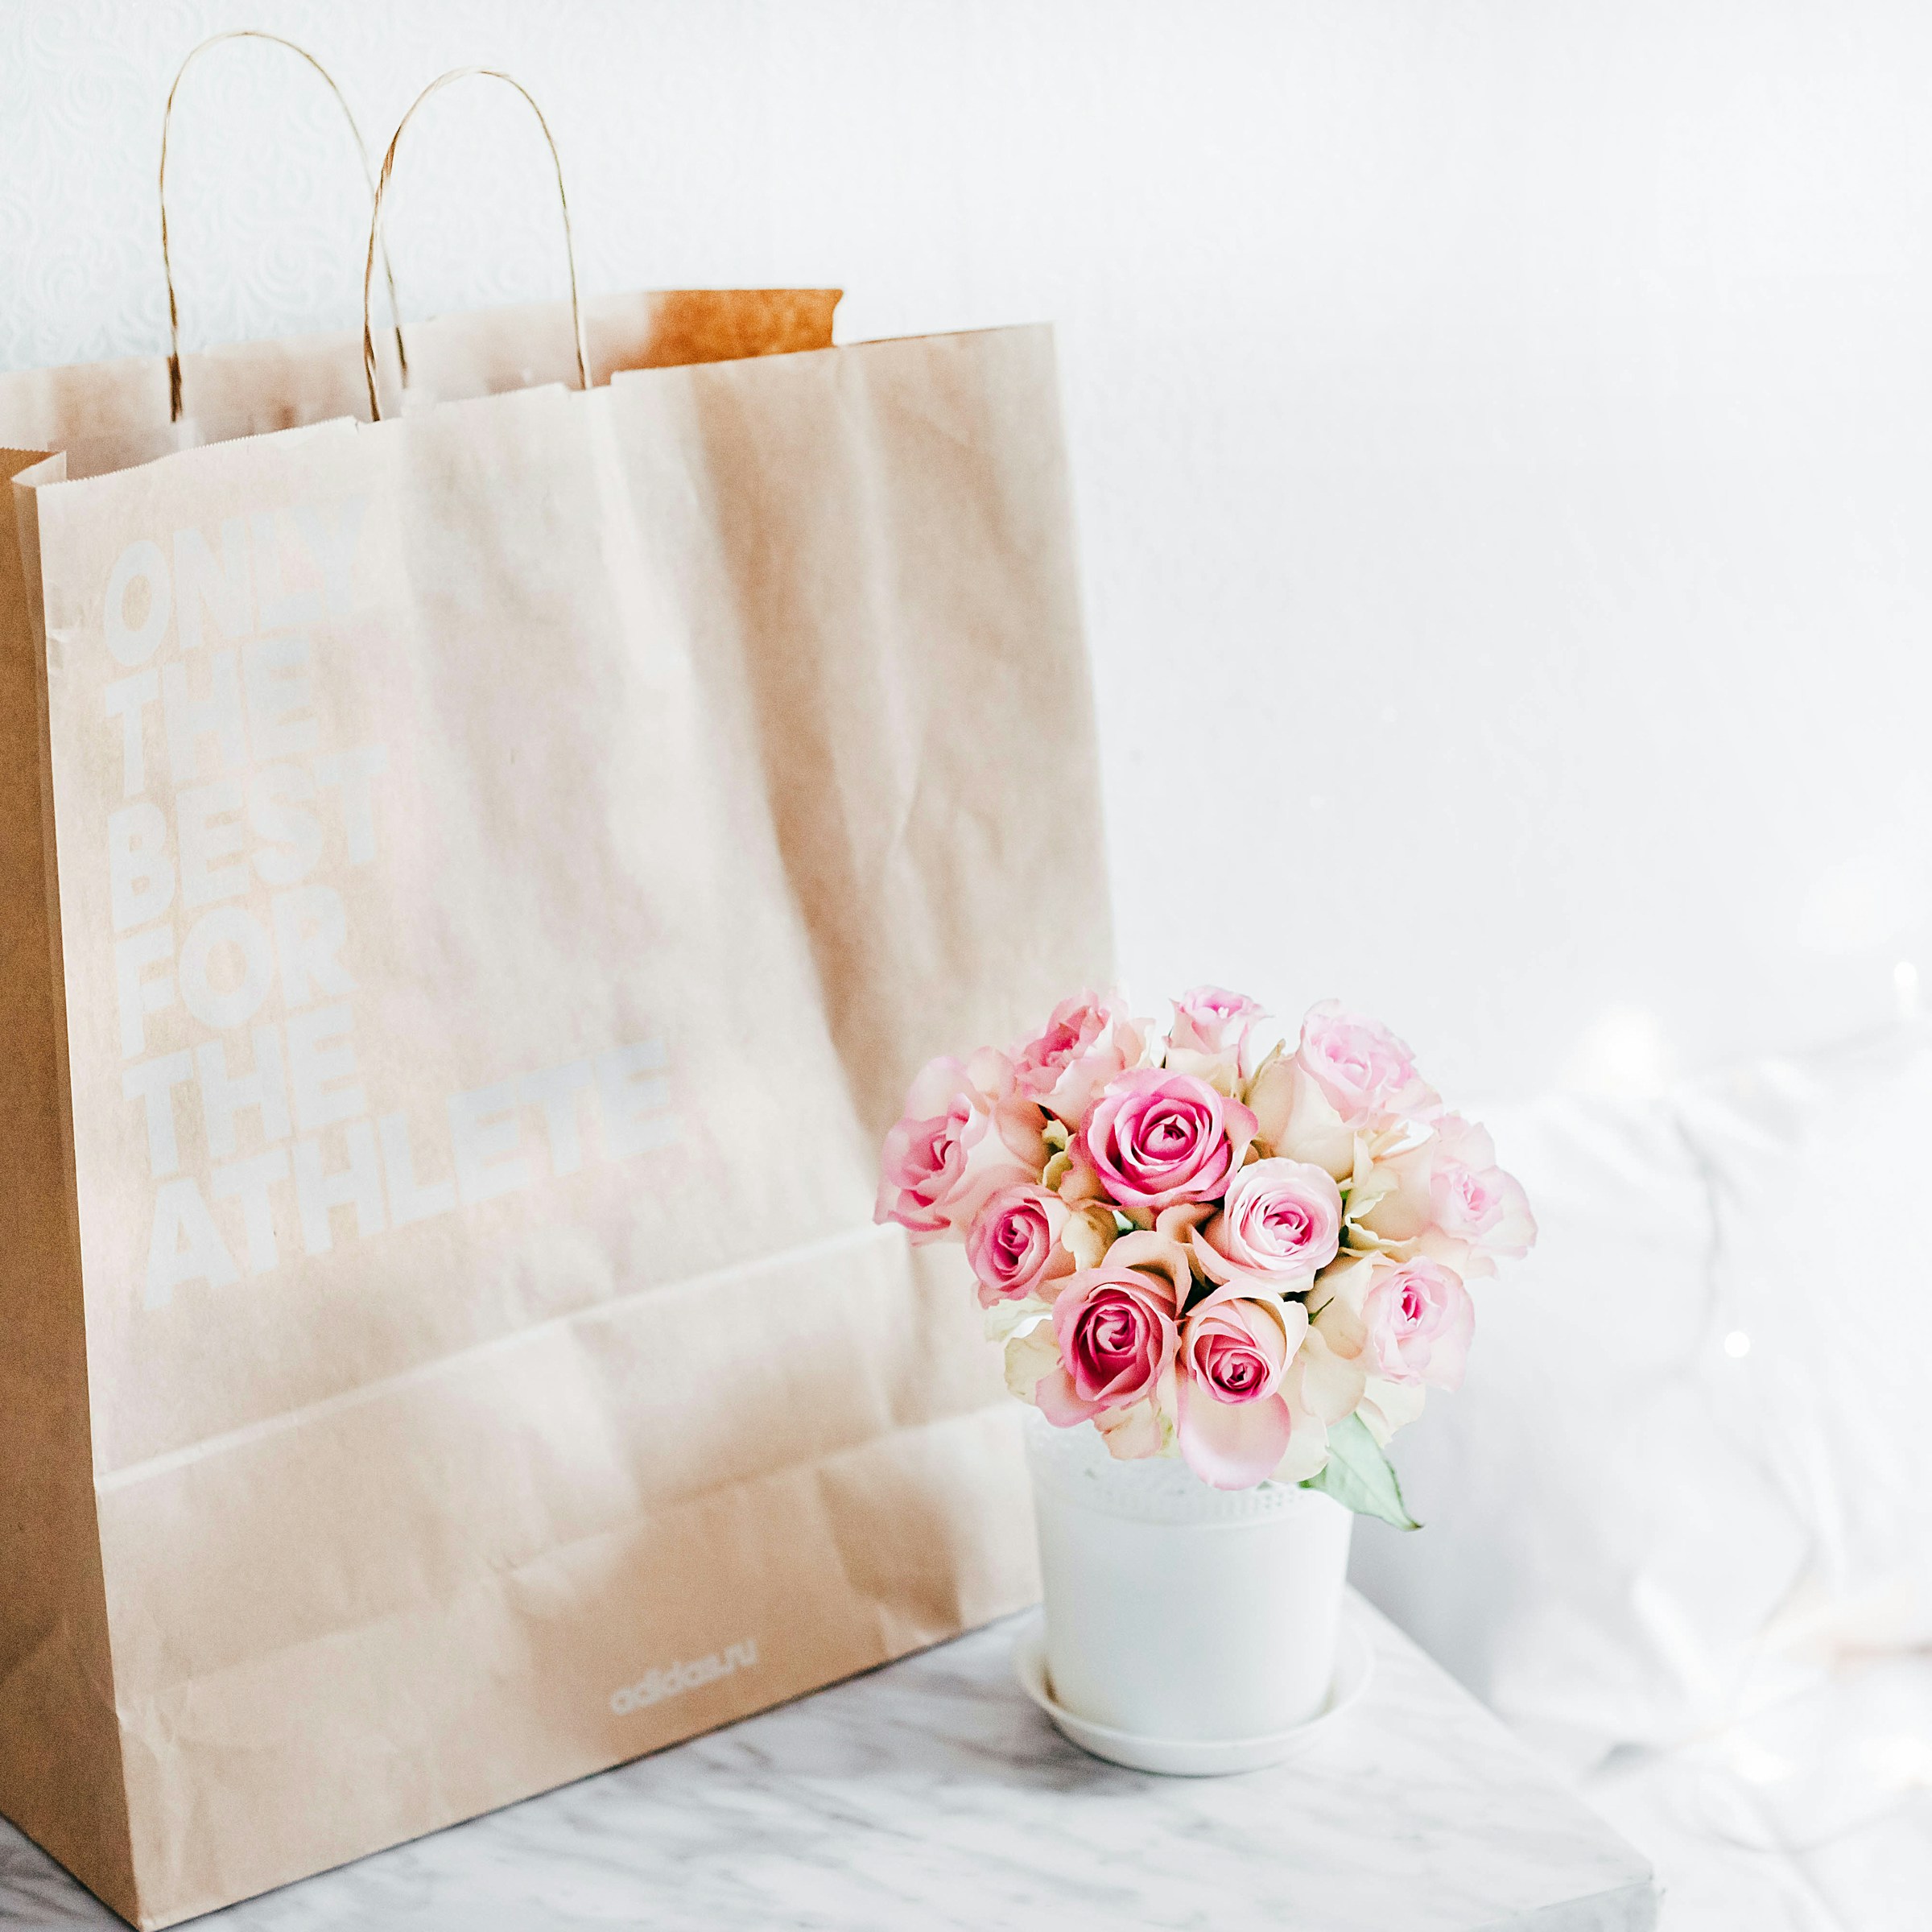 Un bouquet de roses roses et un sac brun | Source : Unsplash